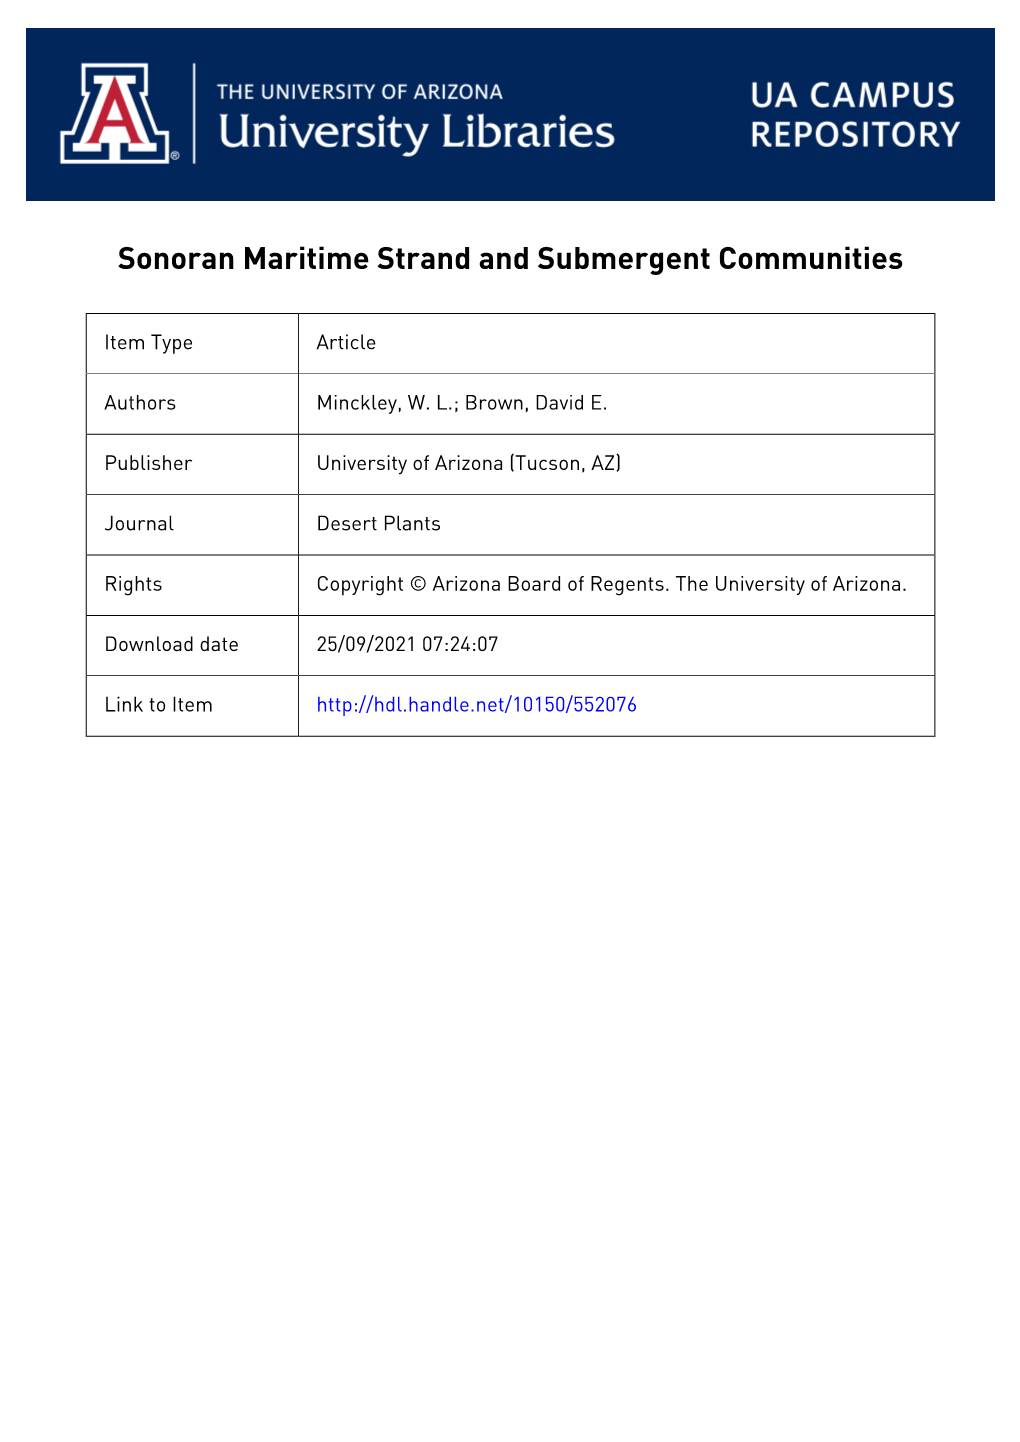 Submergent Communities